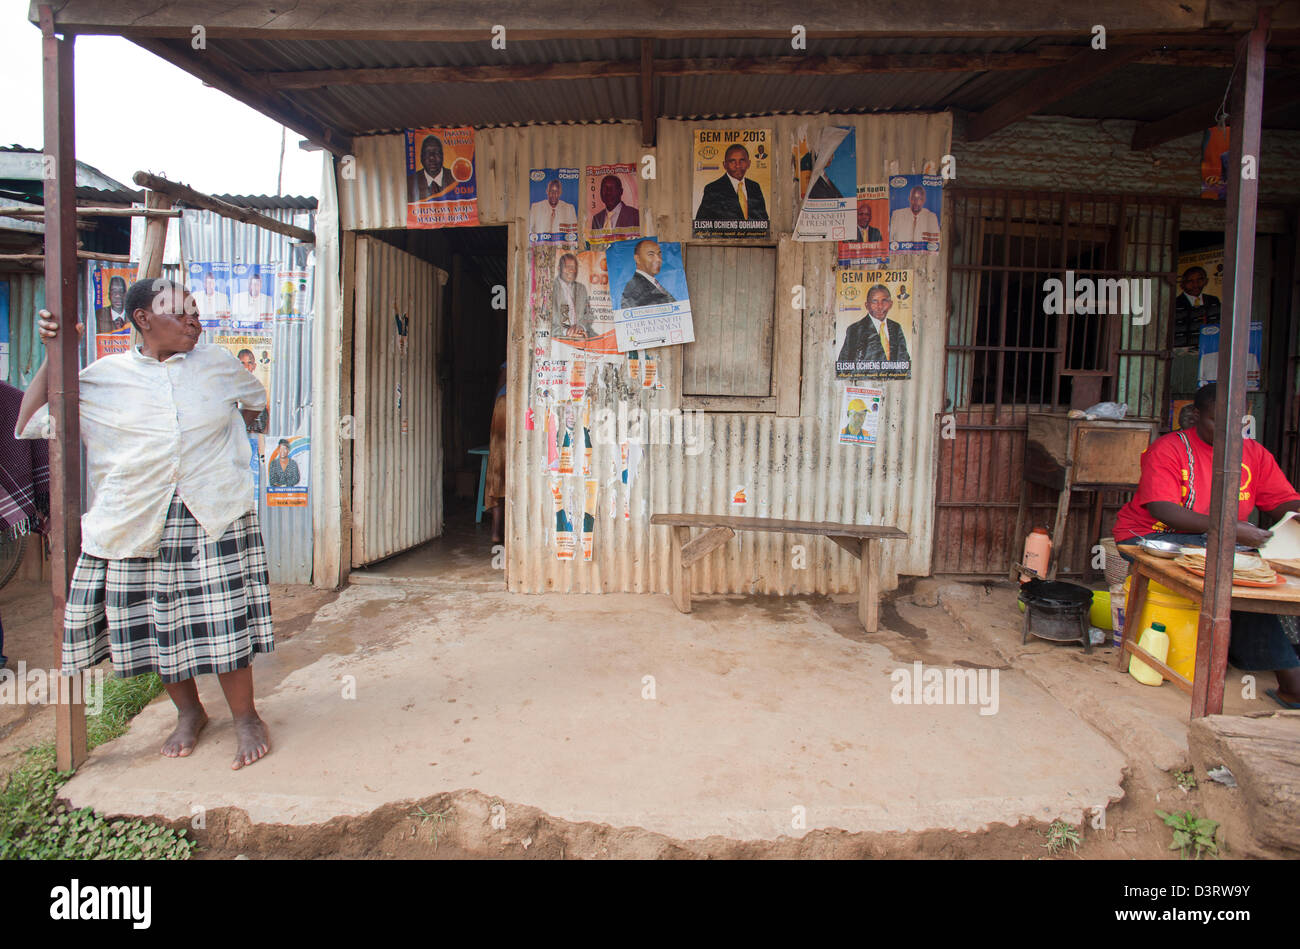 Dame stehend infront von Shop bedeckt mit politischen Plakaten, Yala, Provinz Nyanza, Kenia, Februar 2013. Stockfoto